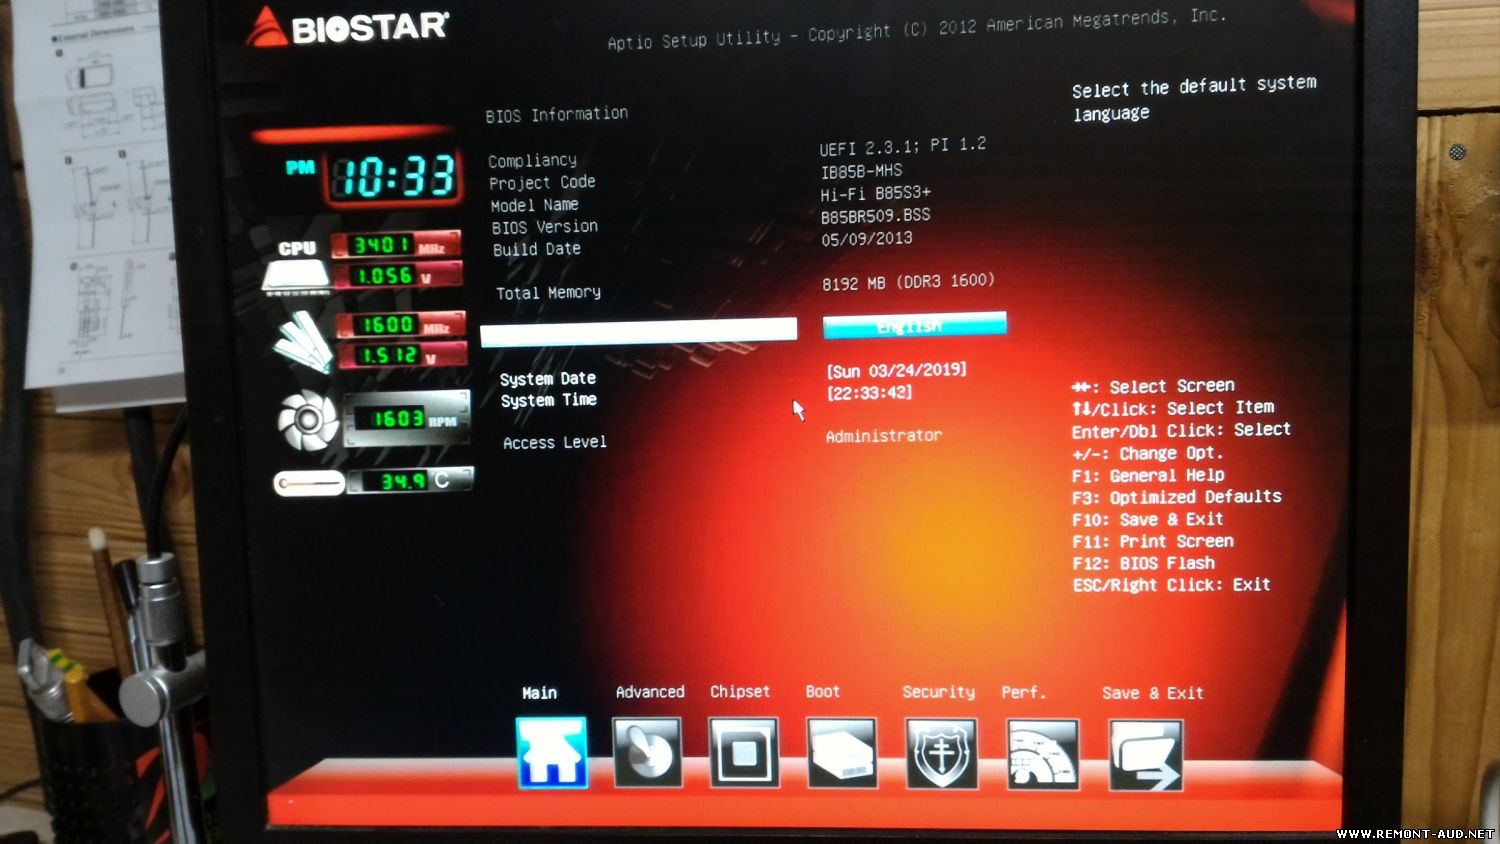 V 7.00. Biostar h310mhd Pro ver. 6.X. H61 BIOS Biostar. Biostar биос загрузка с флешки. UEFI BIOS Biostar.